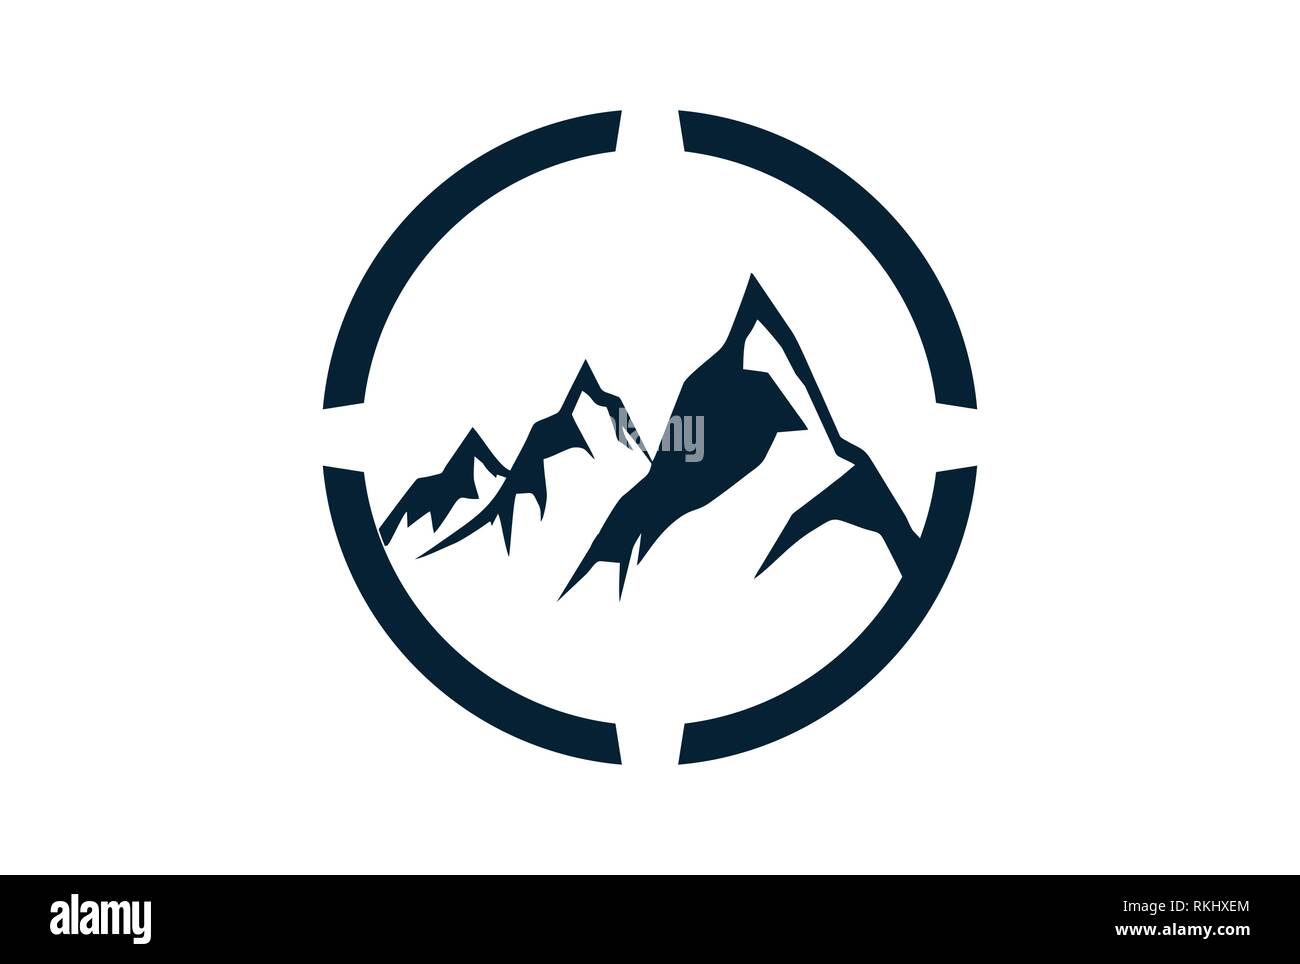 abstract three mountain logo icon Stock Vector